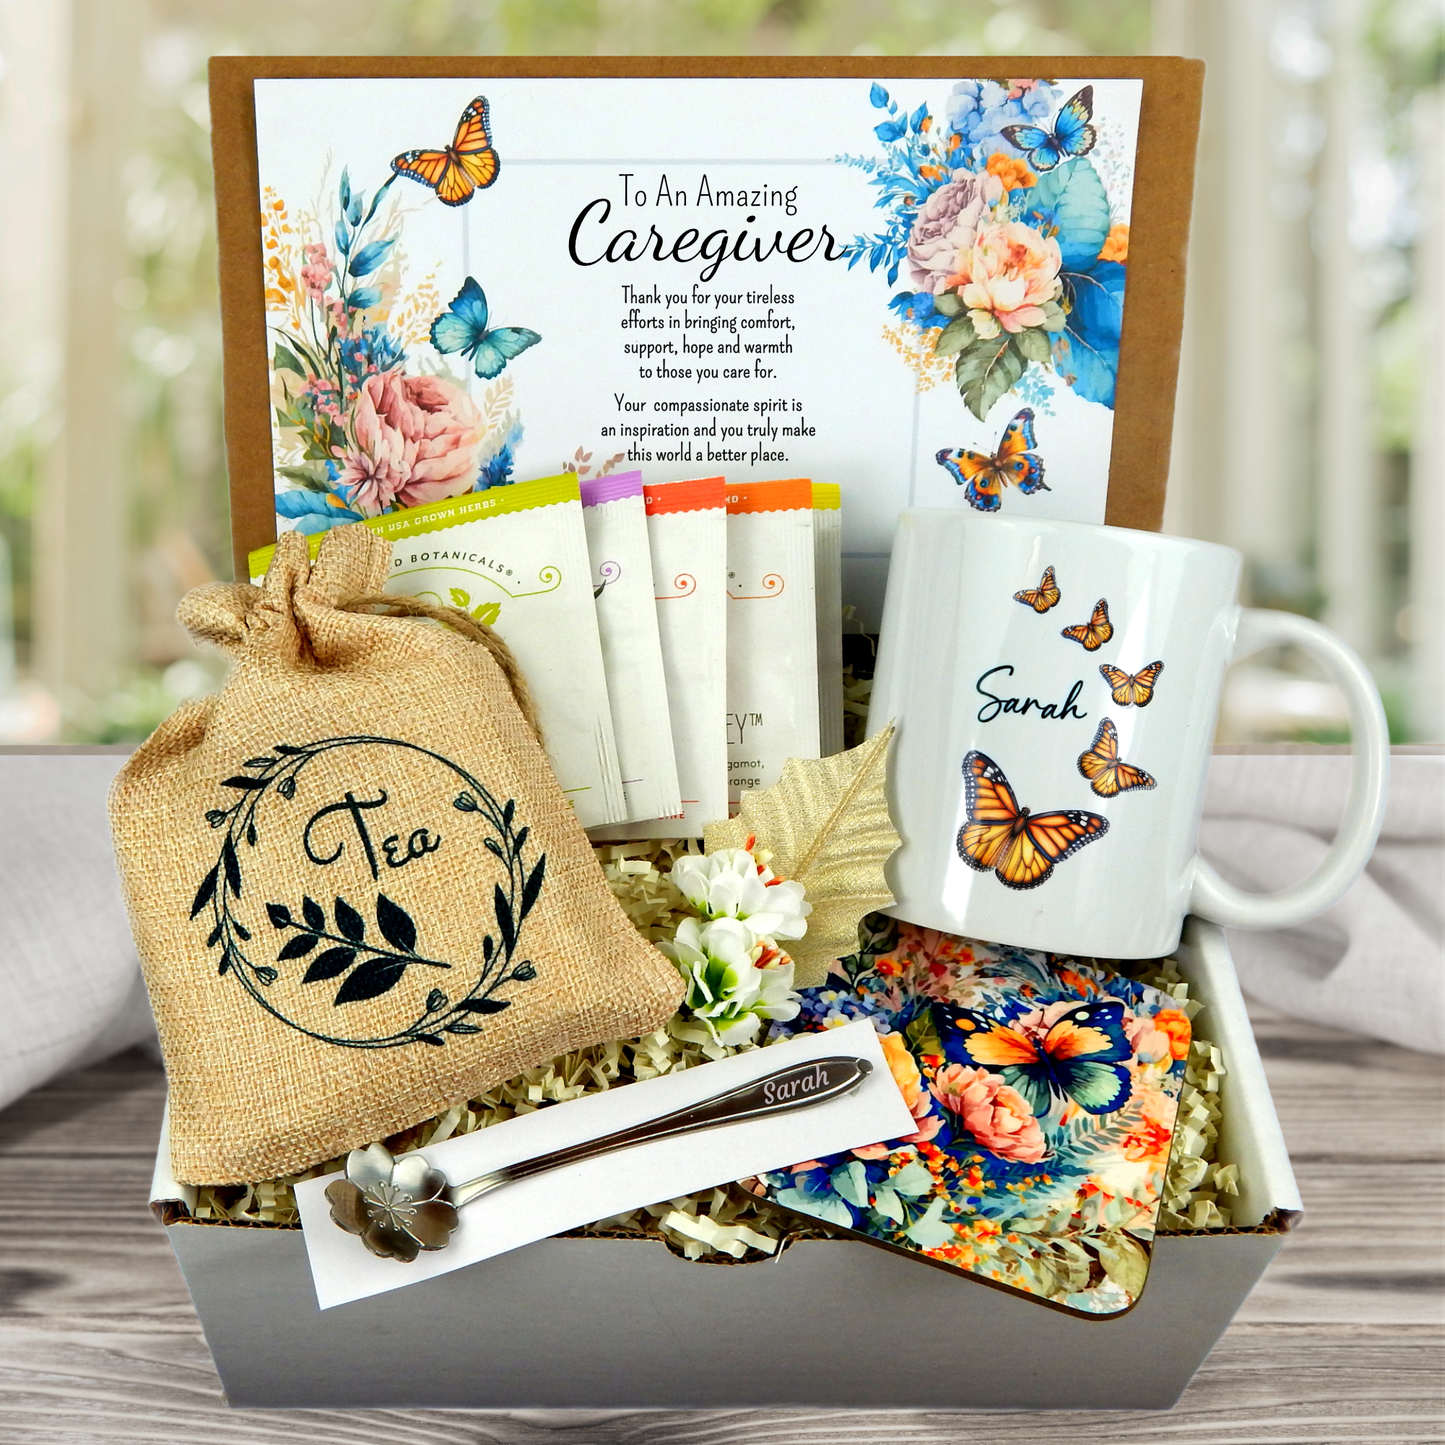 Caregiver Gift - National Caregiver Day - Home Health Gift Basket